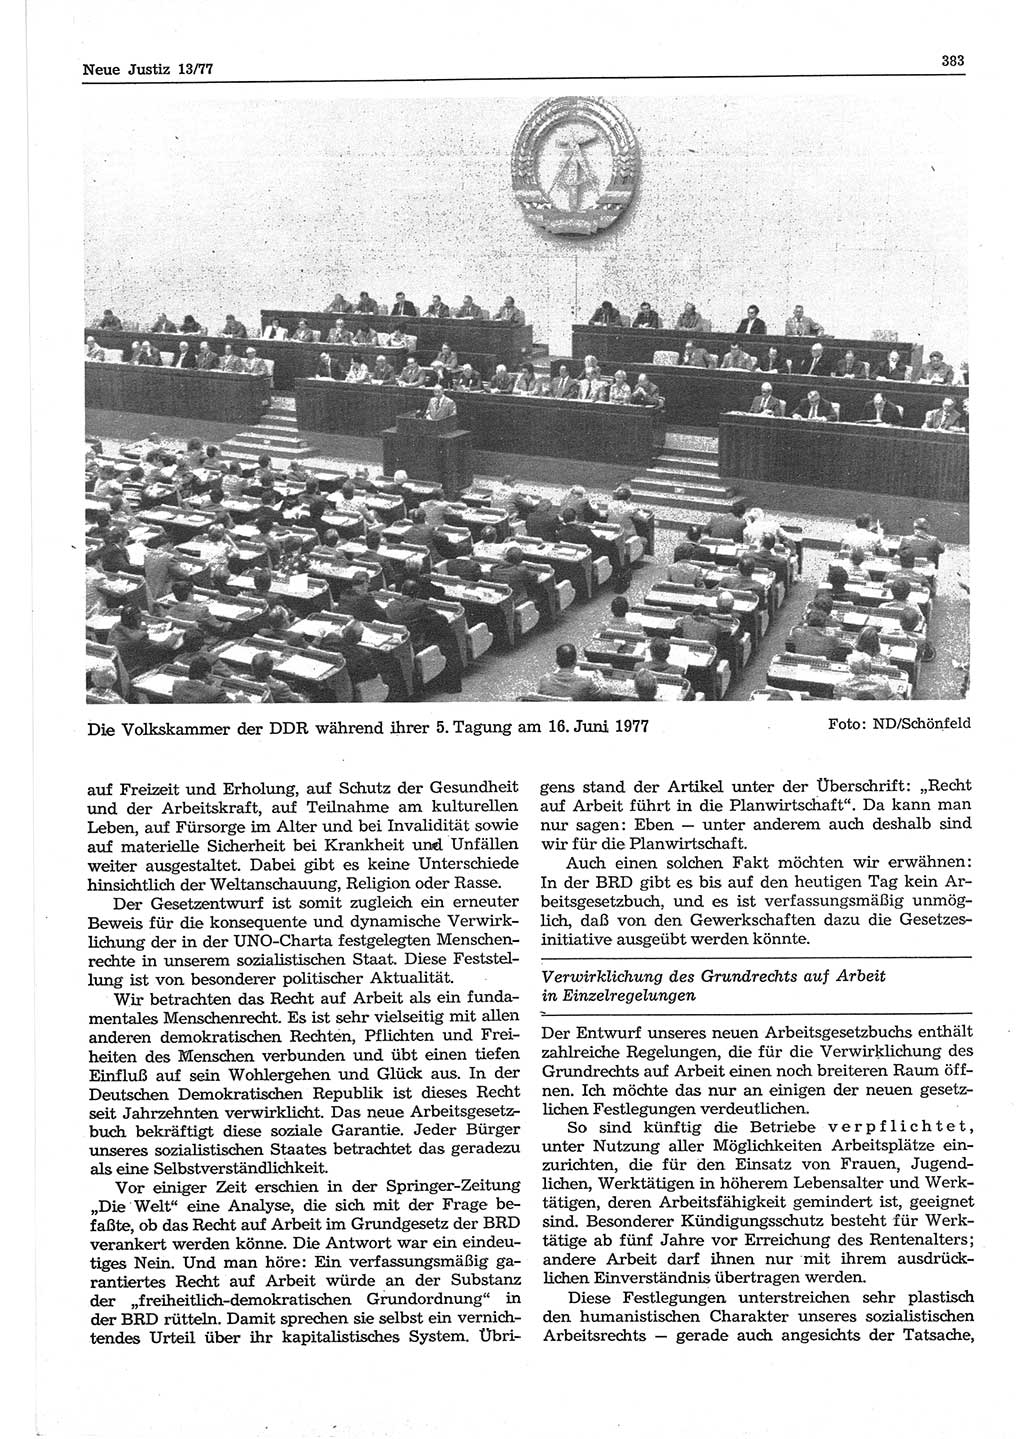 Neue Justiz (NJ), Zeitschrift für Recht und Rechtswissenschaft-Zeitschrift, sozialistisches Recht und Gesetzlichkeit, 31. Jahrgang 1977, Seite 383 (NJ DDR 1977, S. 383)